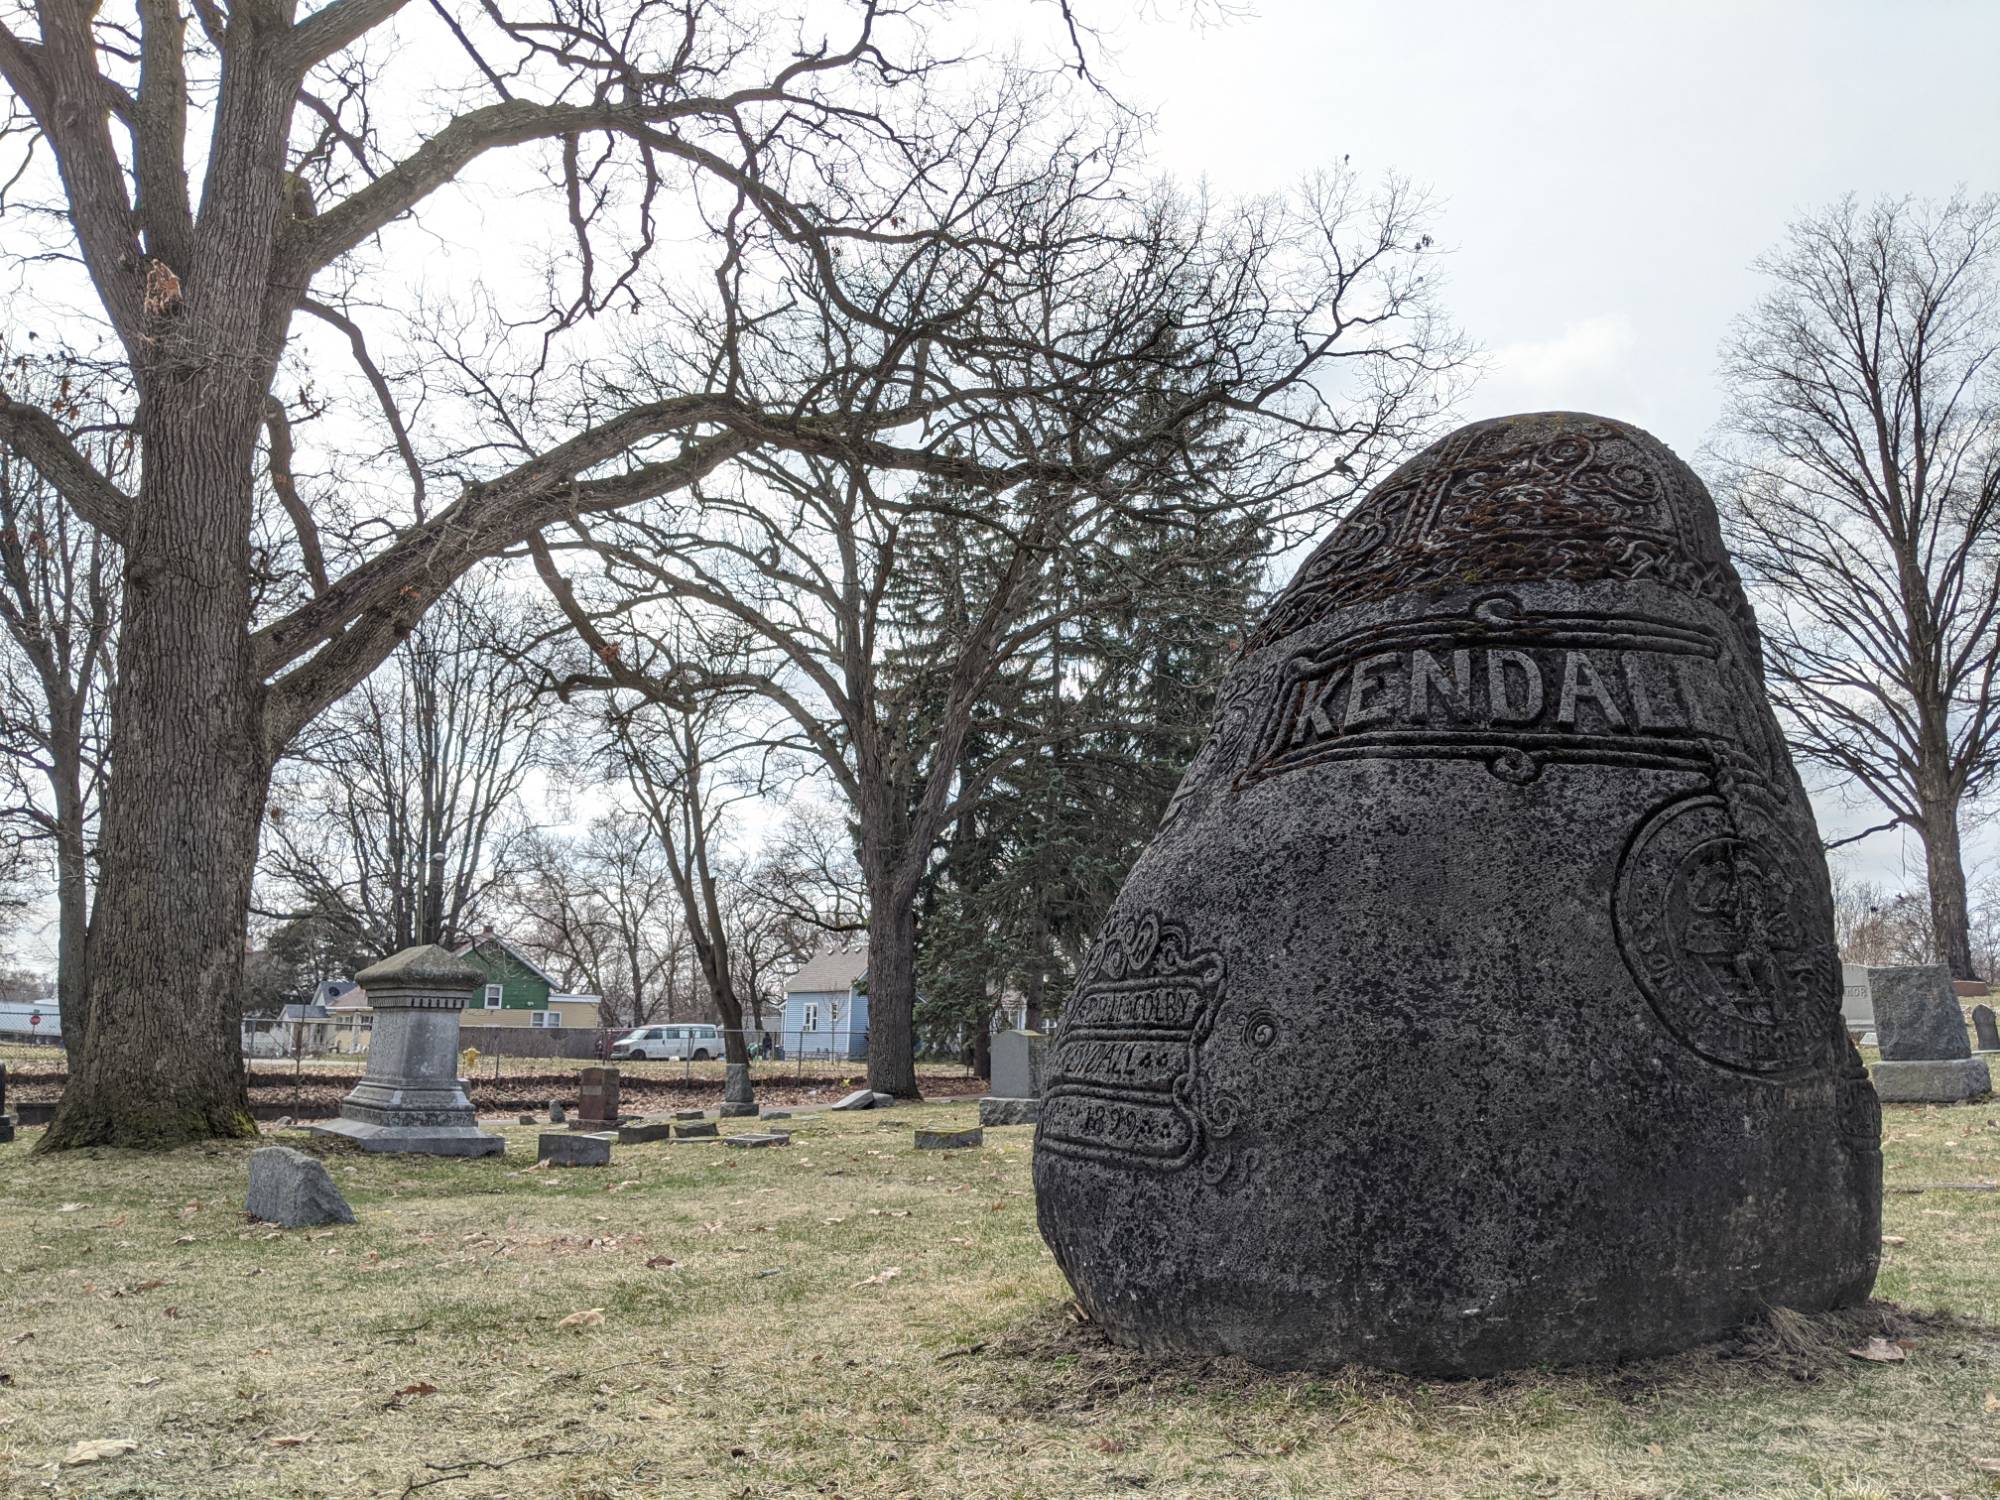 Kendall gravestone in Oakhill Cemetery